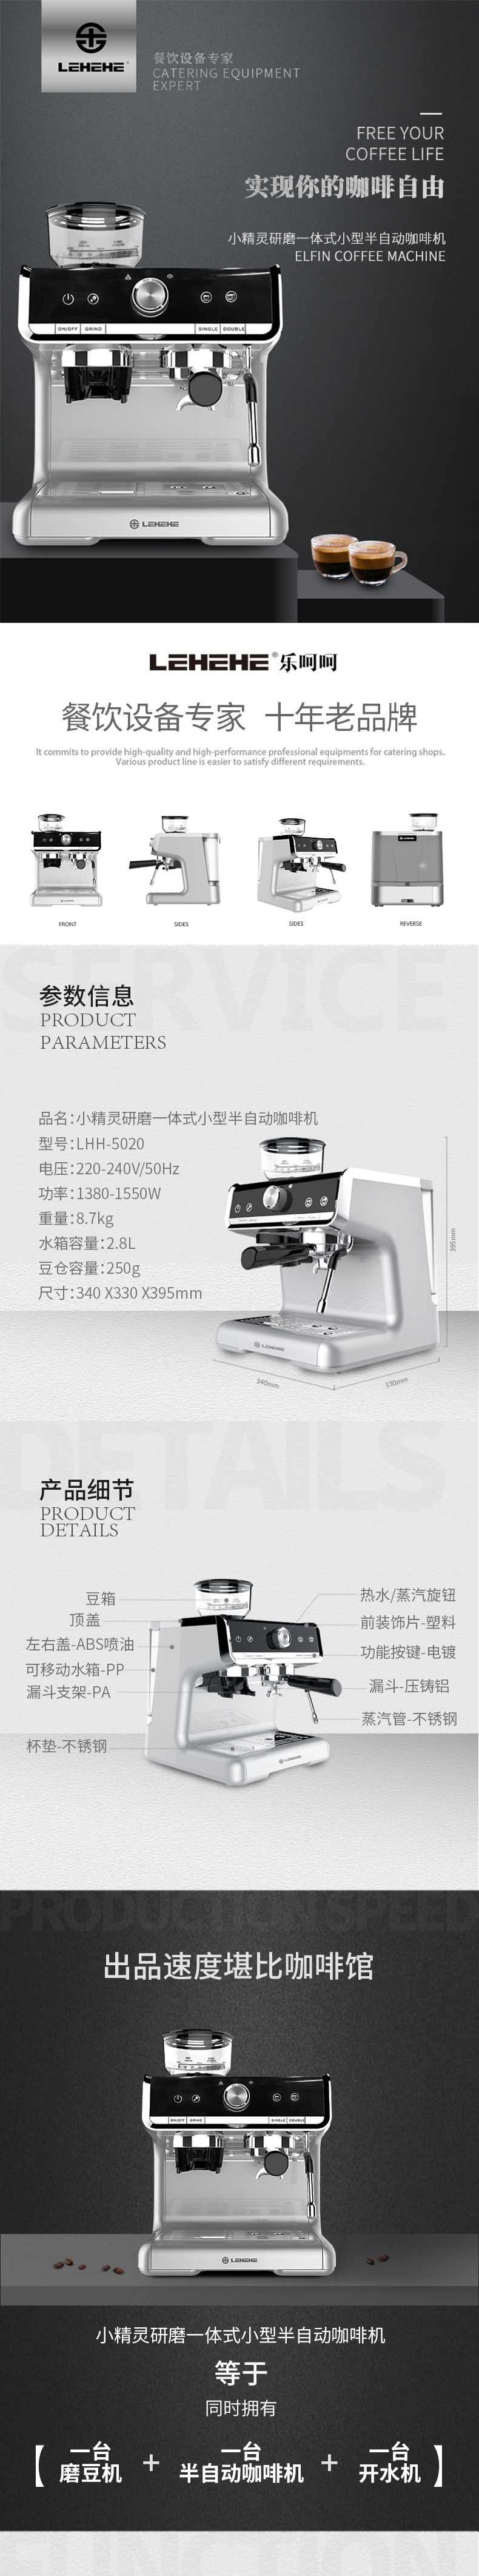 乐呵呵小精灵意式咖啡机 家用小型 研磨奶泡一体商用半自动咖啡机LHH-5020